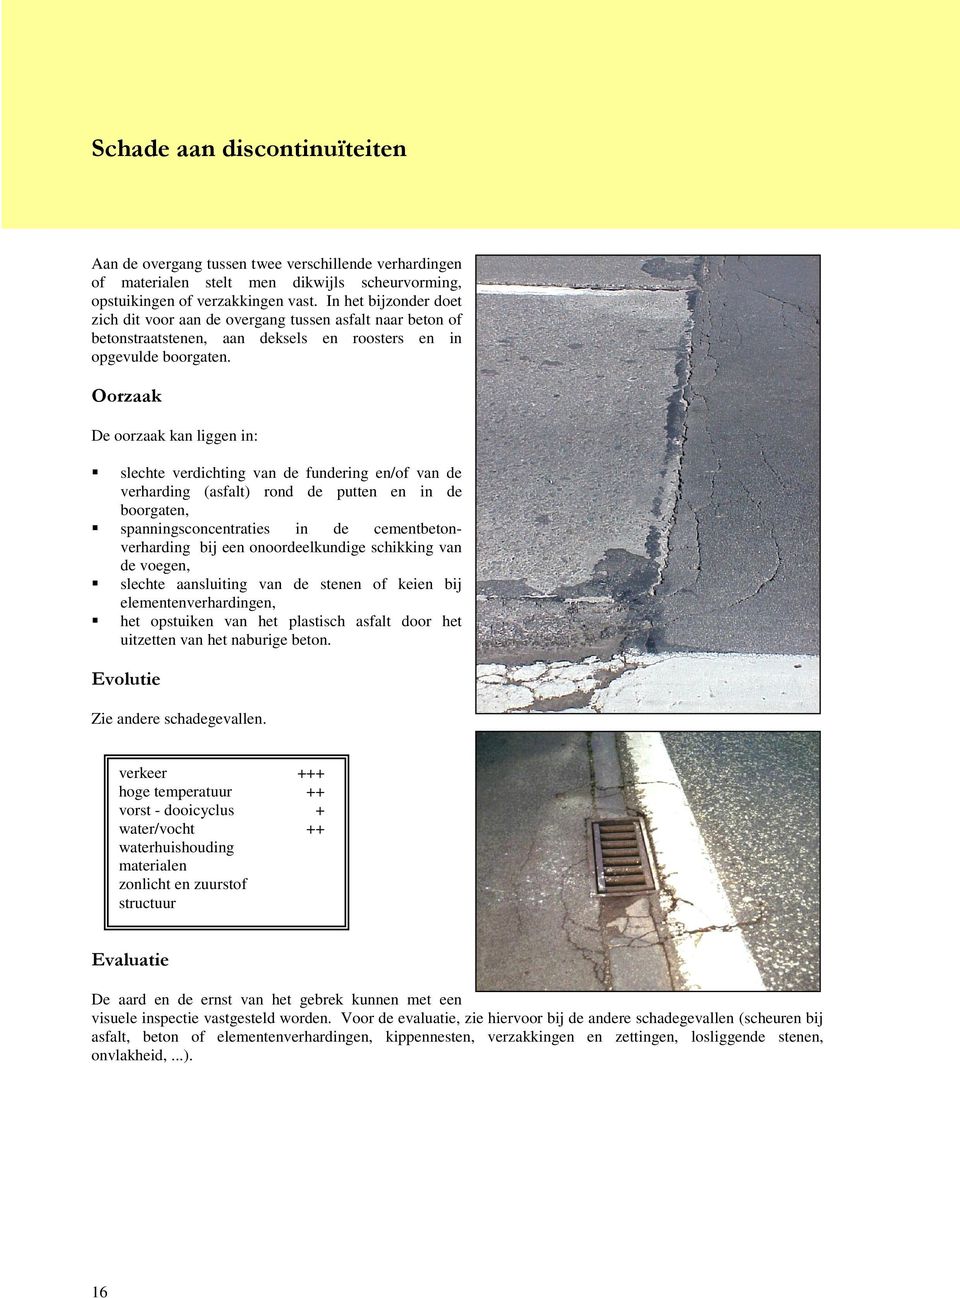 2RU]DDN De oorzaak kan liggen in: slechte verdichting van de fundering en/of van de verharding (asfalt) rond de putten en in de boorgaten, spanningsconcentraties in de cementbetonverharding bij een